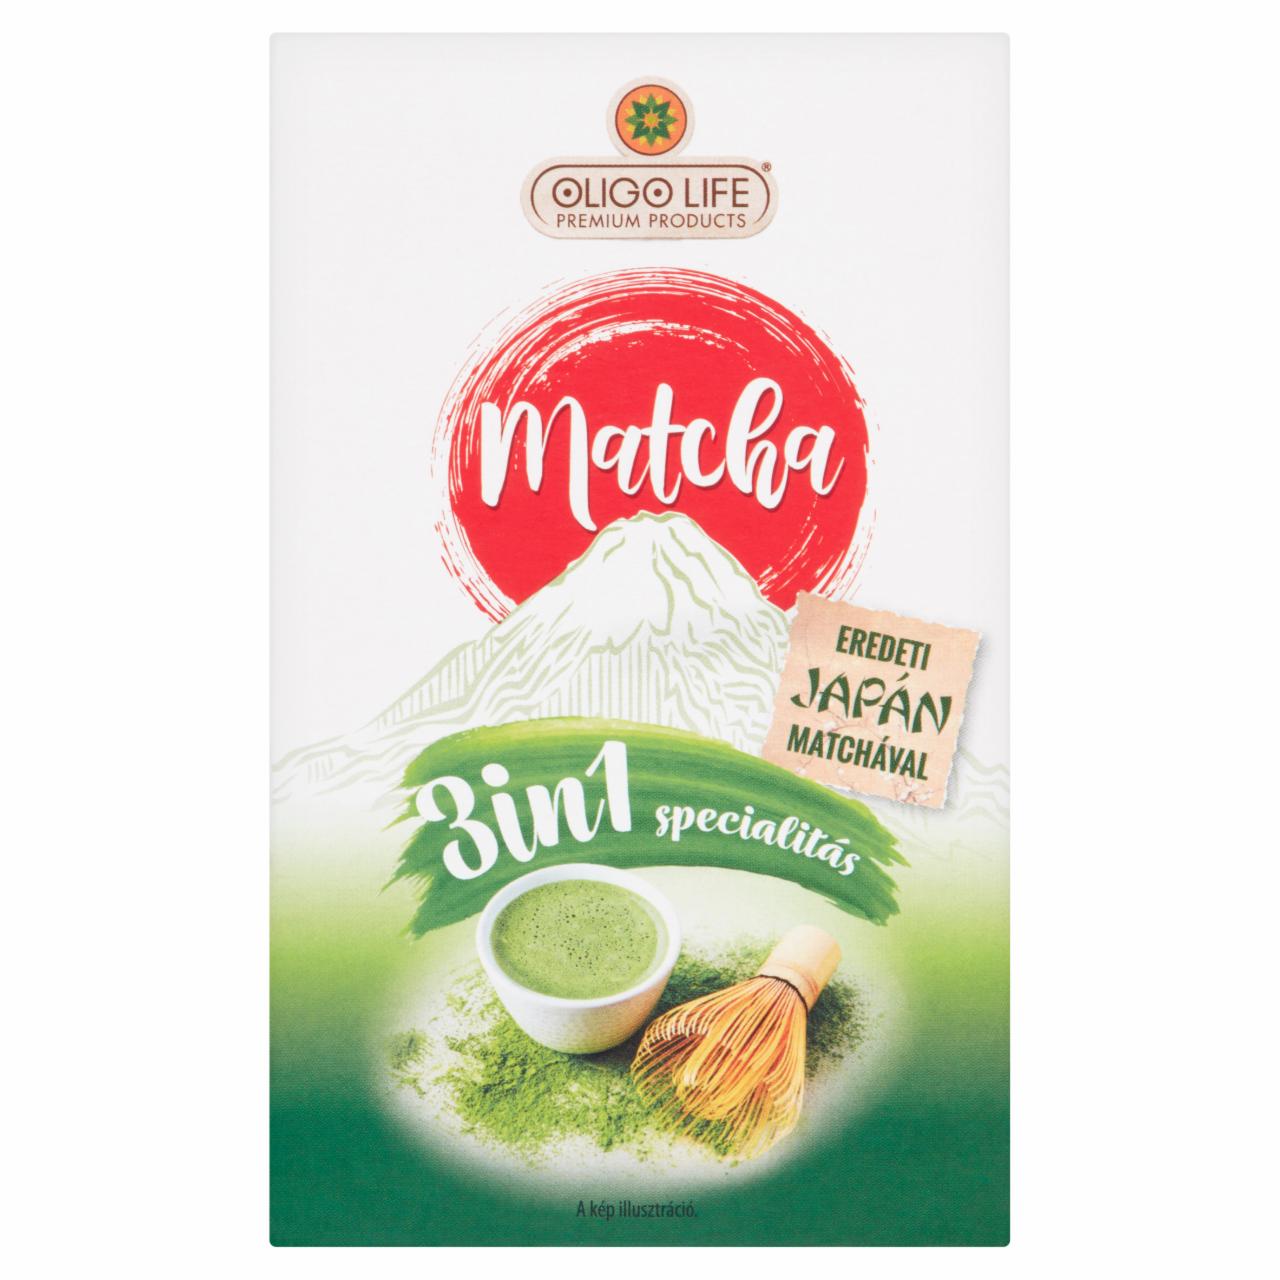 Képek - Oligo Life 3in1 matcha zöld tea specialitás 6 db 96 g